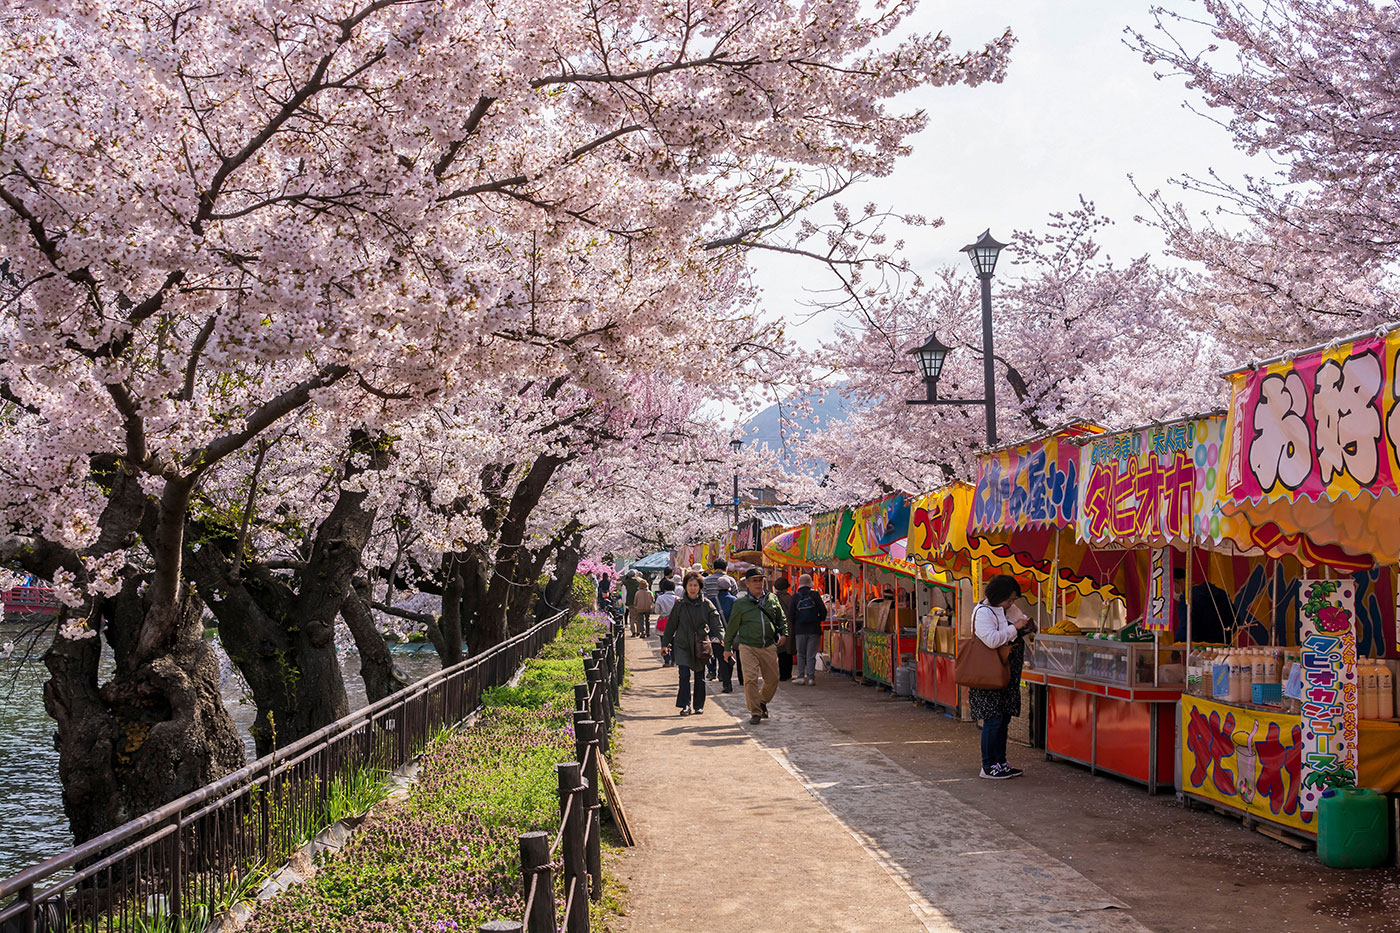 El parque Garyu, en Nagano, es un animado enclave donde disfrutar de la belleza del sakura y del mercado junto a la orilla del río